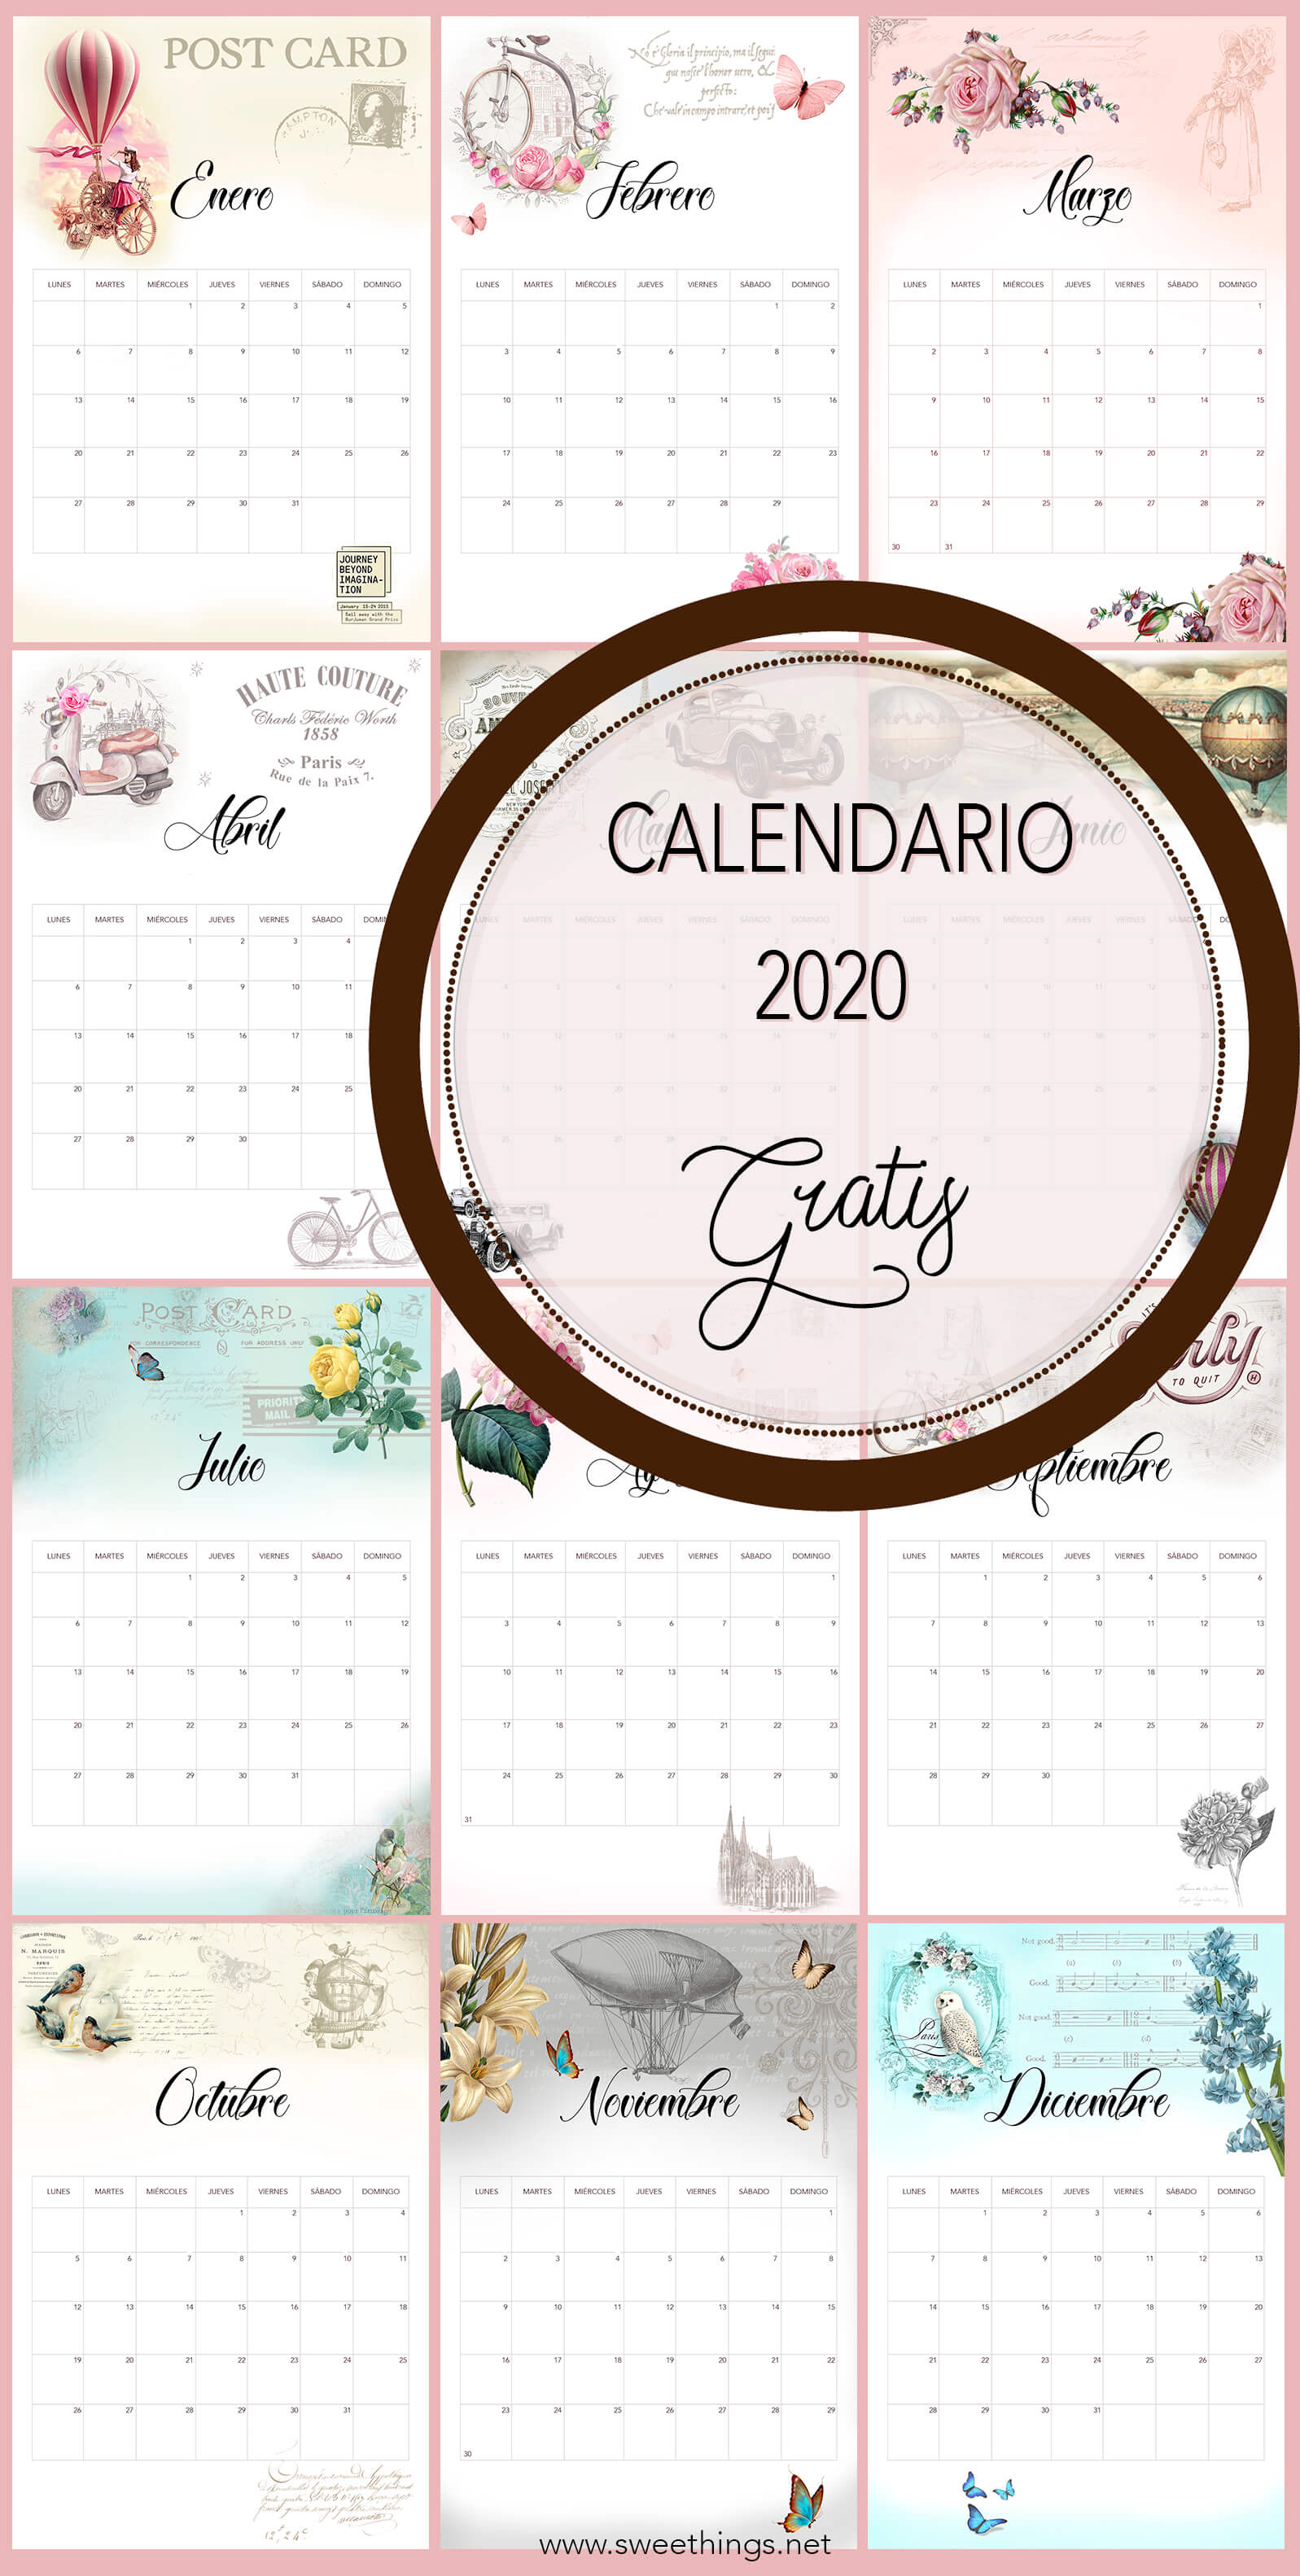 Calendario 2020 vintage gratis para descargar · Via www.sweethings.net